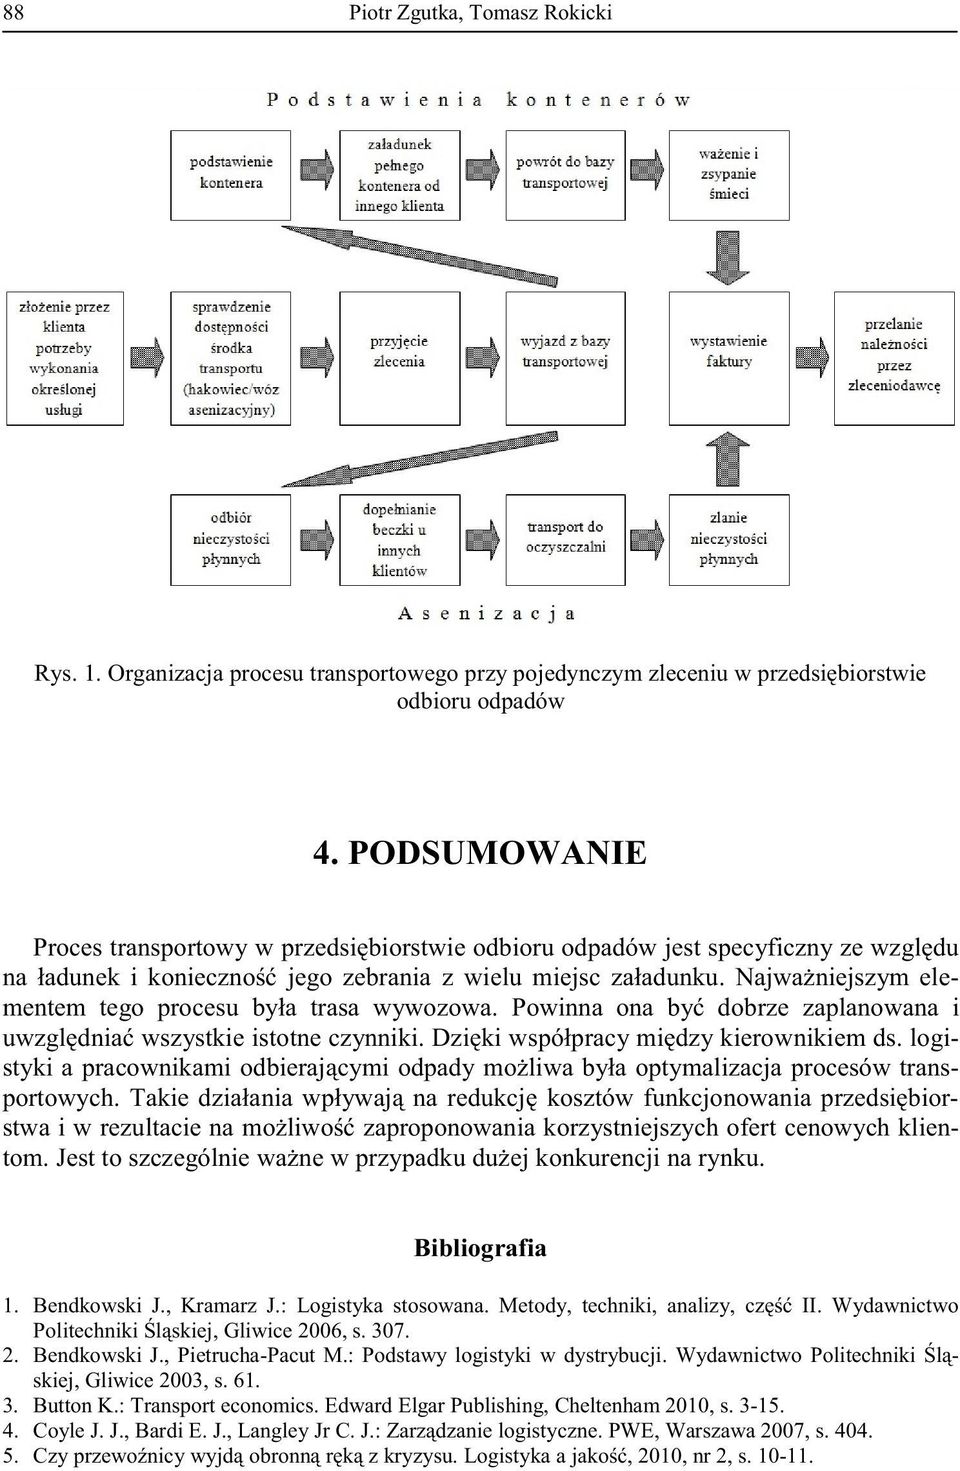 , Kramarz J.:. Wydawnictwo 2. Bendkowski J., Pietrucha-Pacut M.: Podstawy logistyki w dystrybucji.